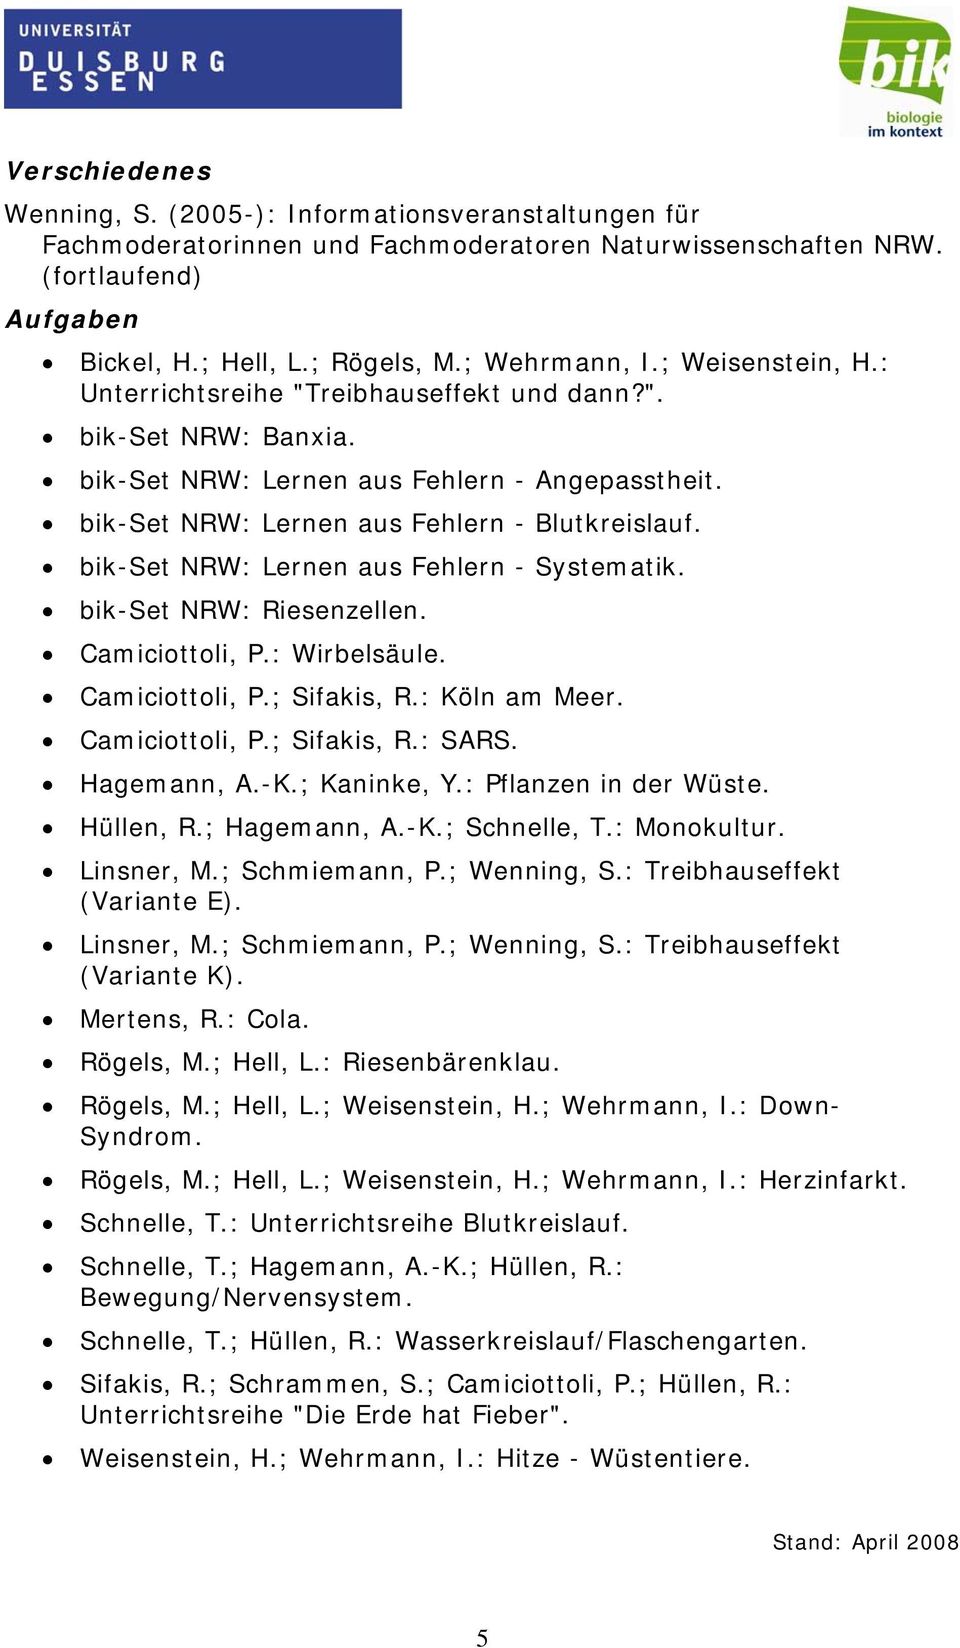 bik-set NRW: Lernen aus Fehlern - Systematik. bik-set NRW: Riesenzellen. Camiciottoli, P.: Wirbelsäule. Camiciottoli, P.; Sifakis, R.: Köln am Meer. Camiciottoli, P.; Sifakis, R.: SARS. Hagemann, A.